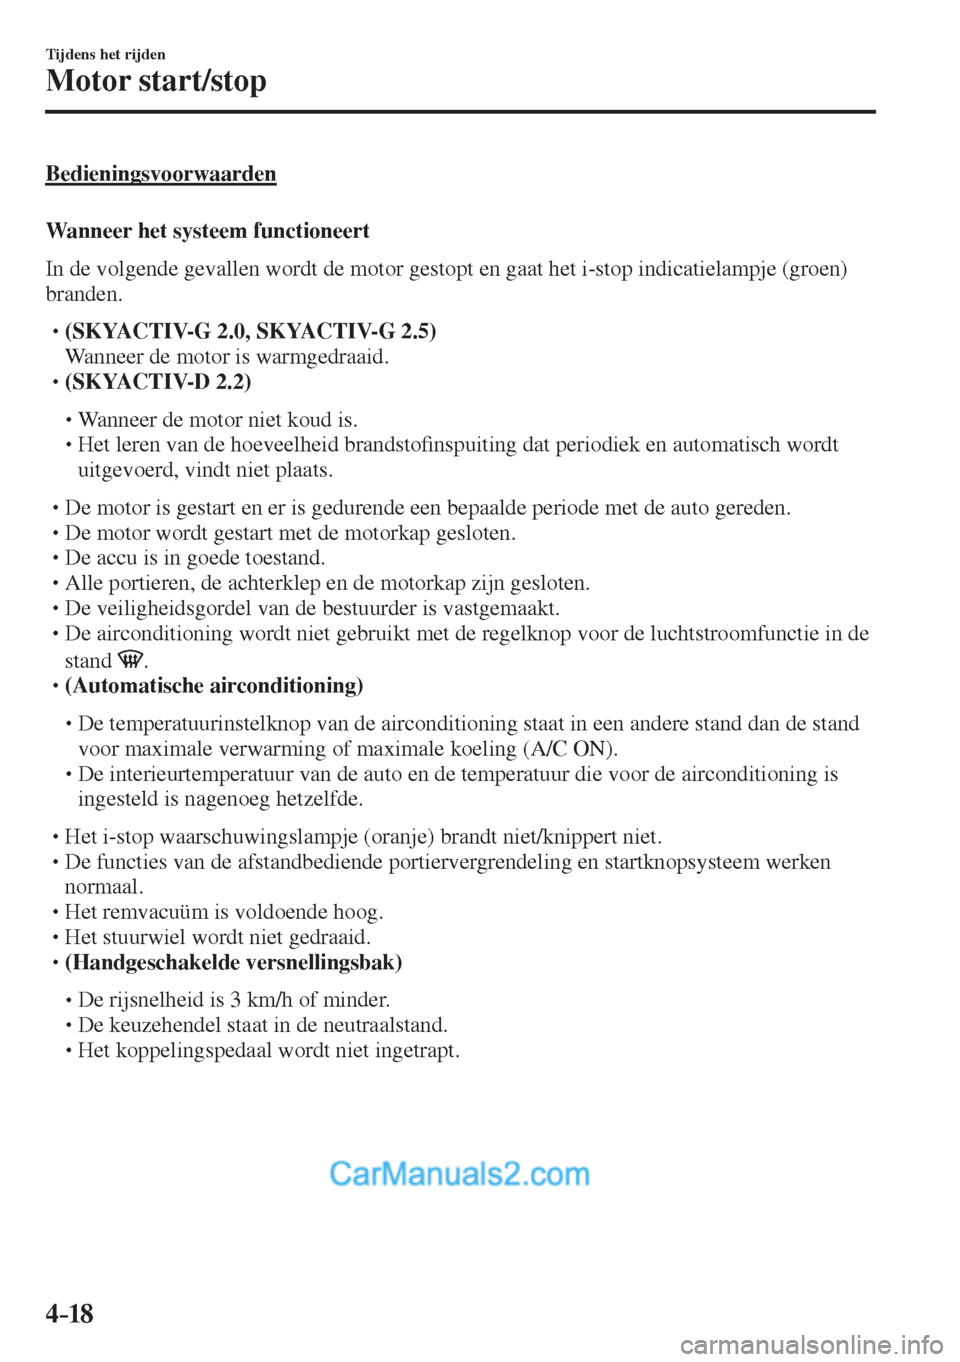 MAZDA MODEL CX-5 2017  Handleiding (in Dutch) 4–18
Tijdens het rijden
Motor start/stop
  Bedieningsvoorwaarden
    Wanneer  het  systeem  functioneert
    In de volgende gevallen wordt de motor gestopt en gaat het i-stop indicatielampje (groen)